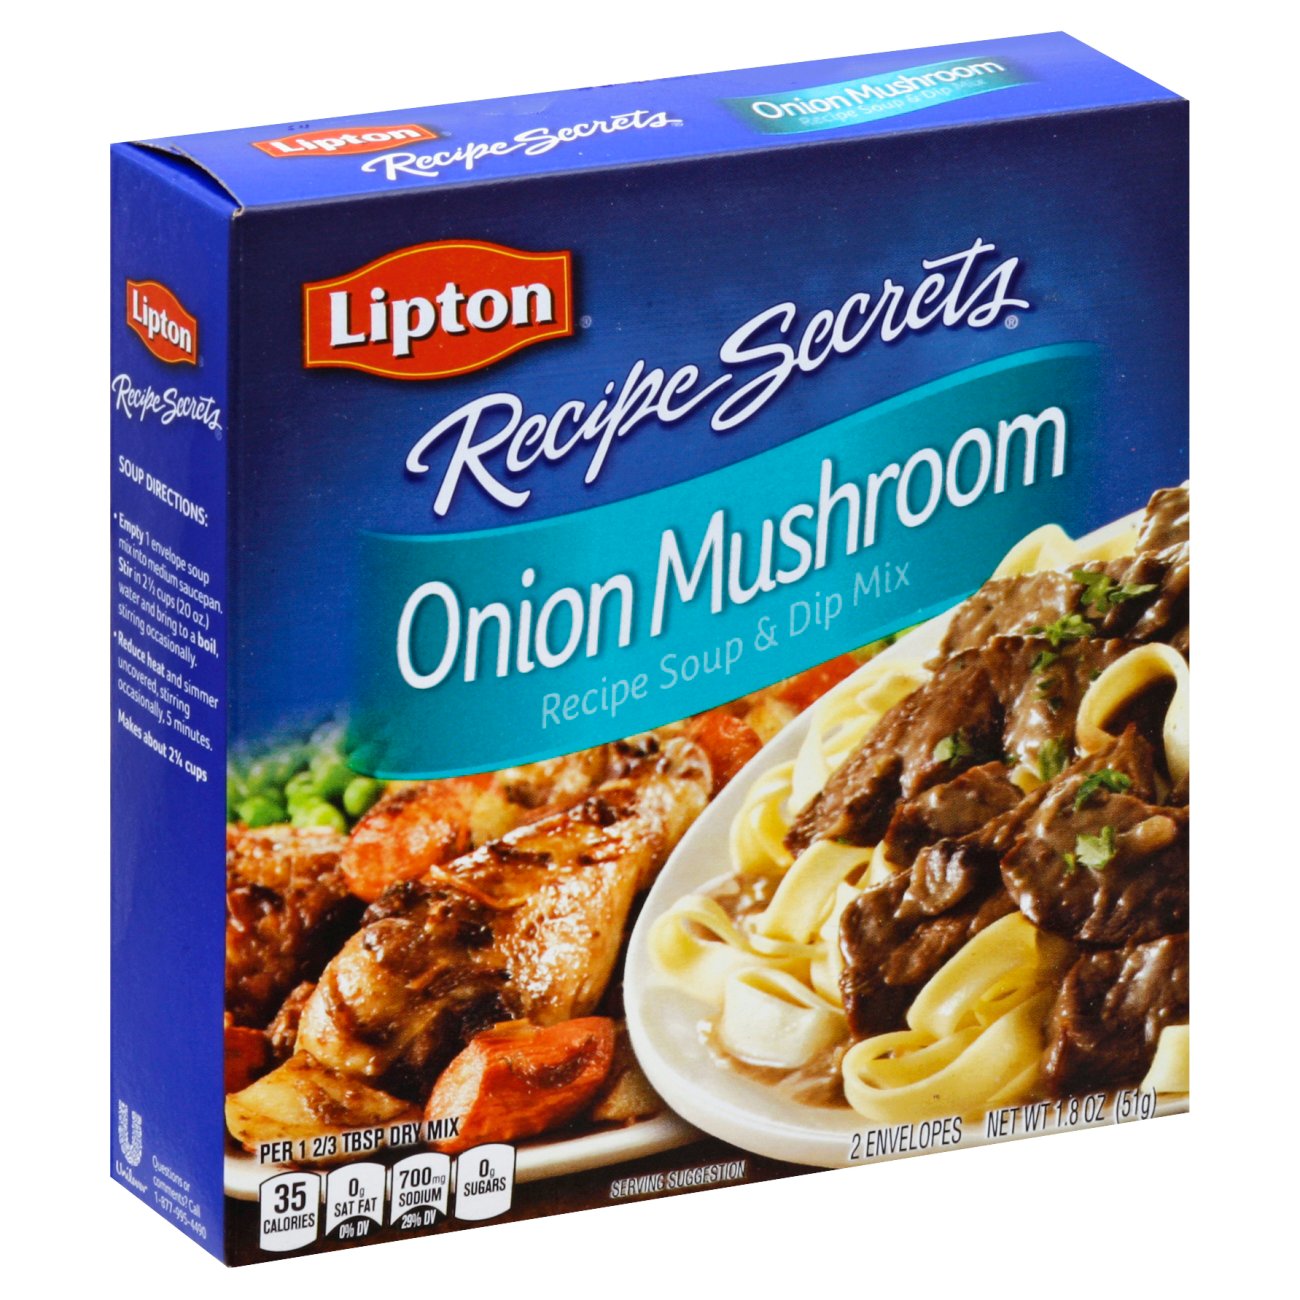 Juster kaste støv i øjnene Jurassic Park Lipton Recipe Secrets Soup and Dip Mix Onion Mushroom - Shop Soups & Chili  at H-E-B